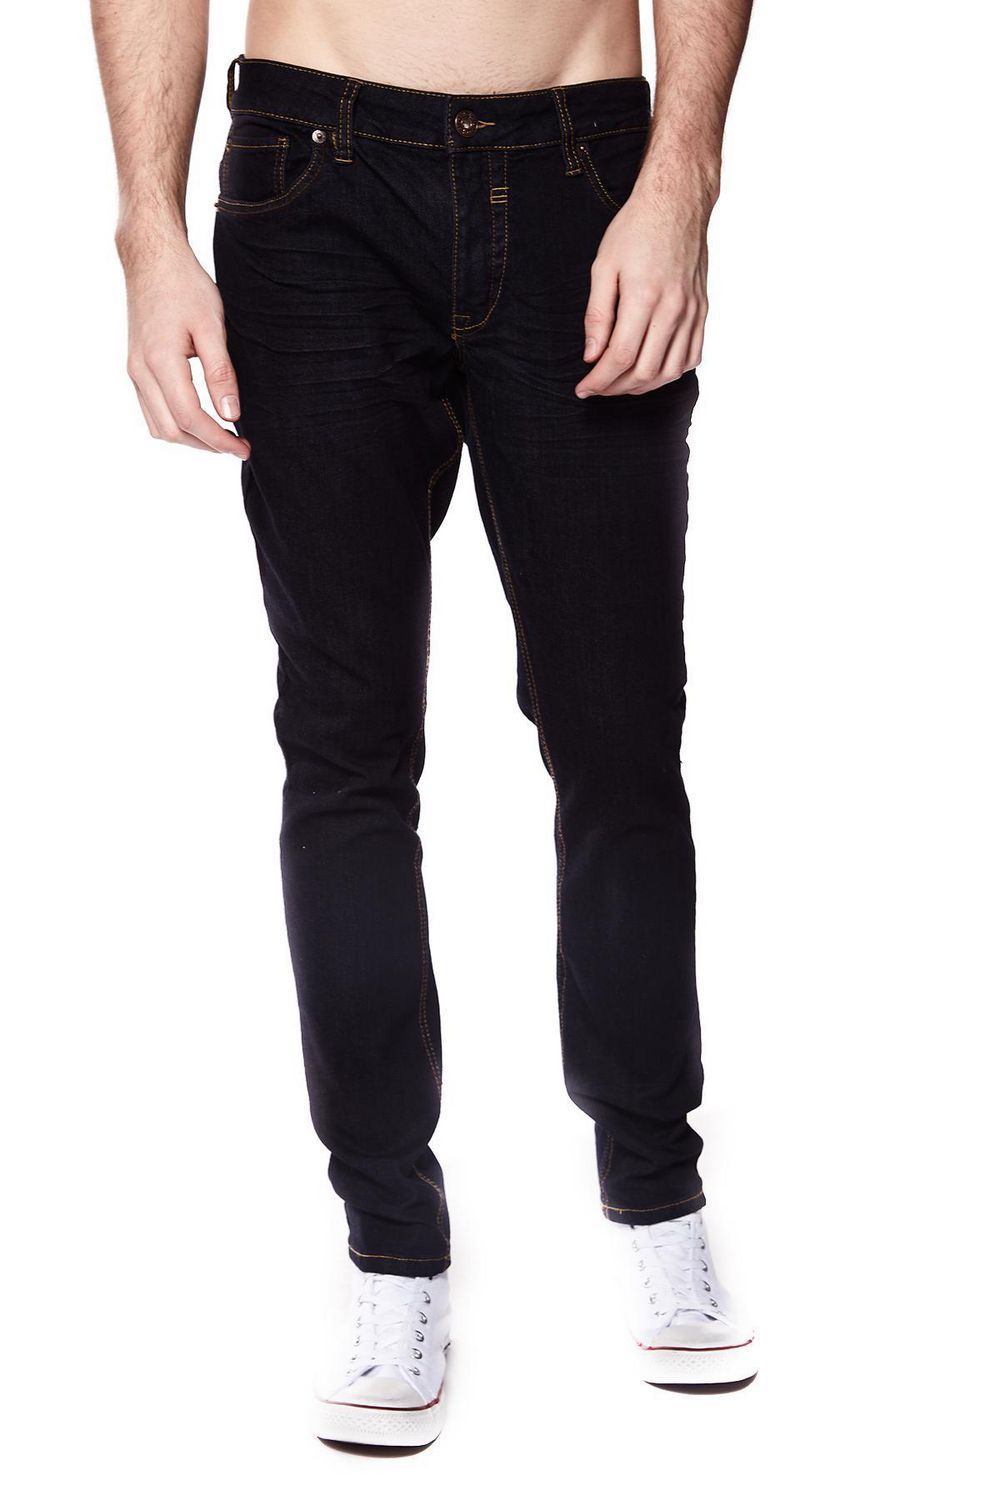 Jeaniologie ™ Men 5-Pocket Slim Fit Jeans | Blue-Black Wash, Sizes ...